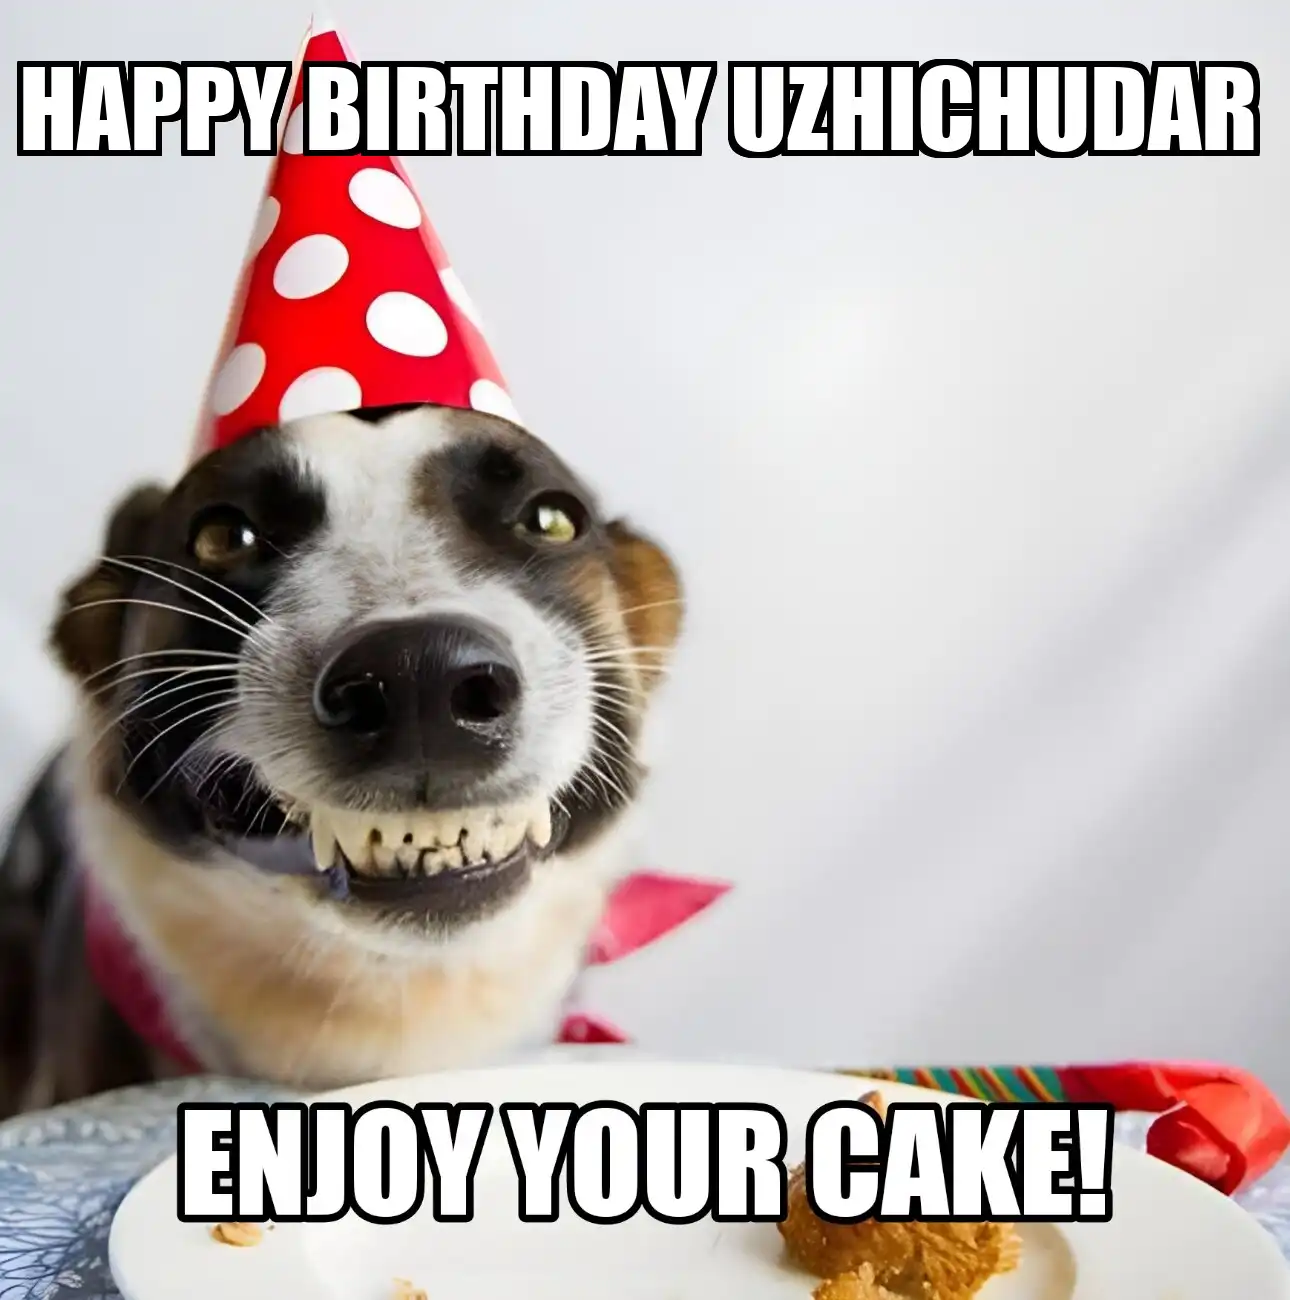 Happy Birthday Uzhichudar Enjoy Your Cake Dog Meme